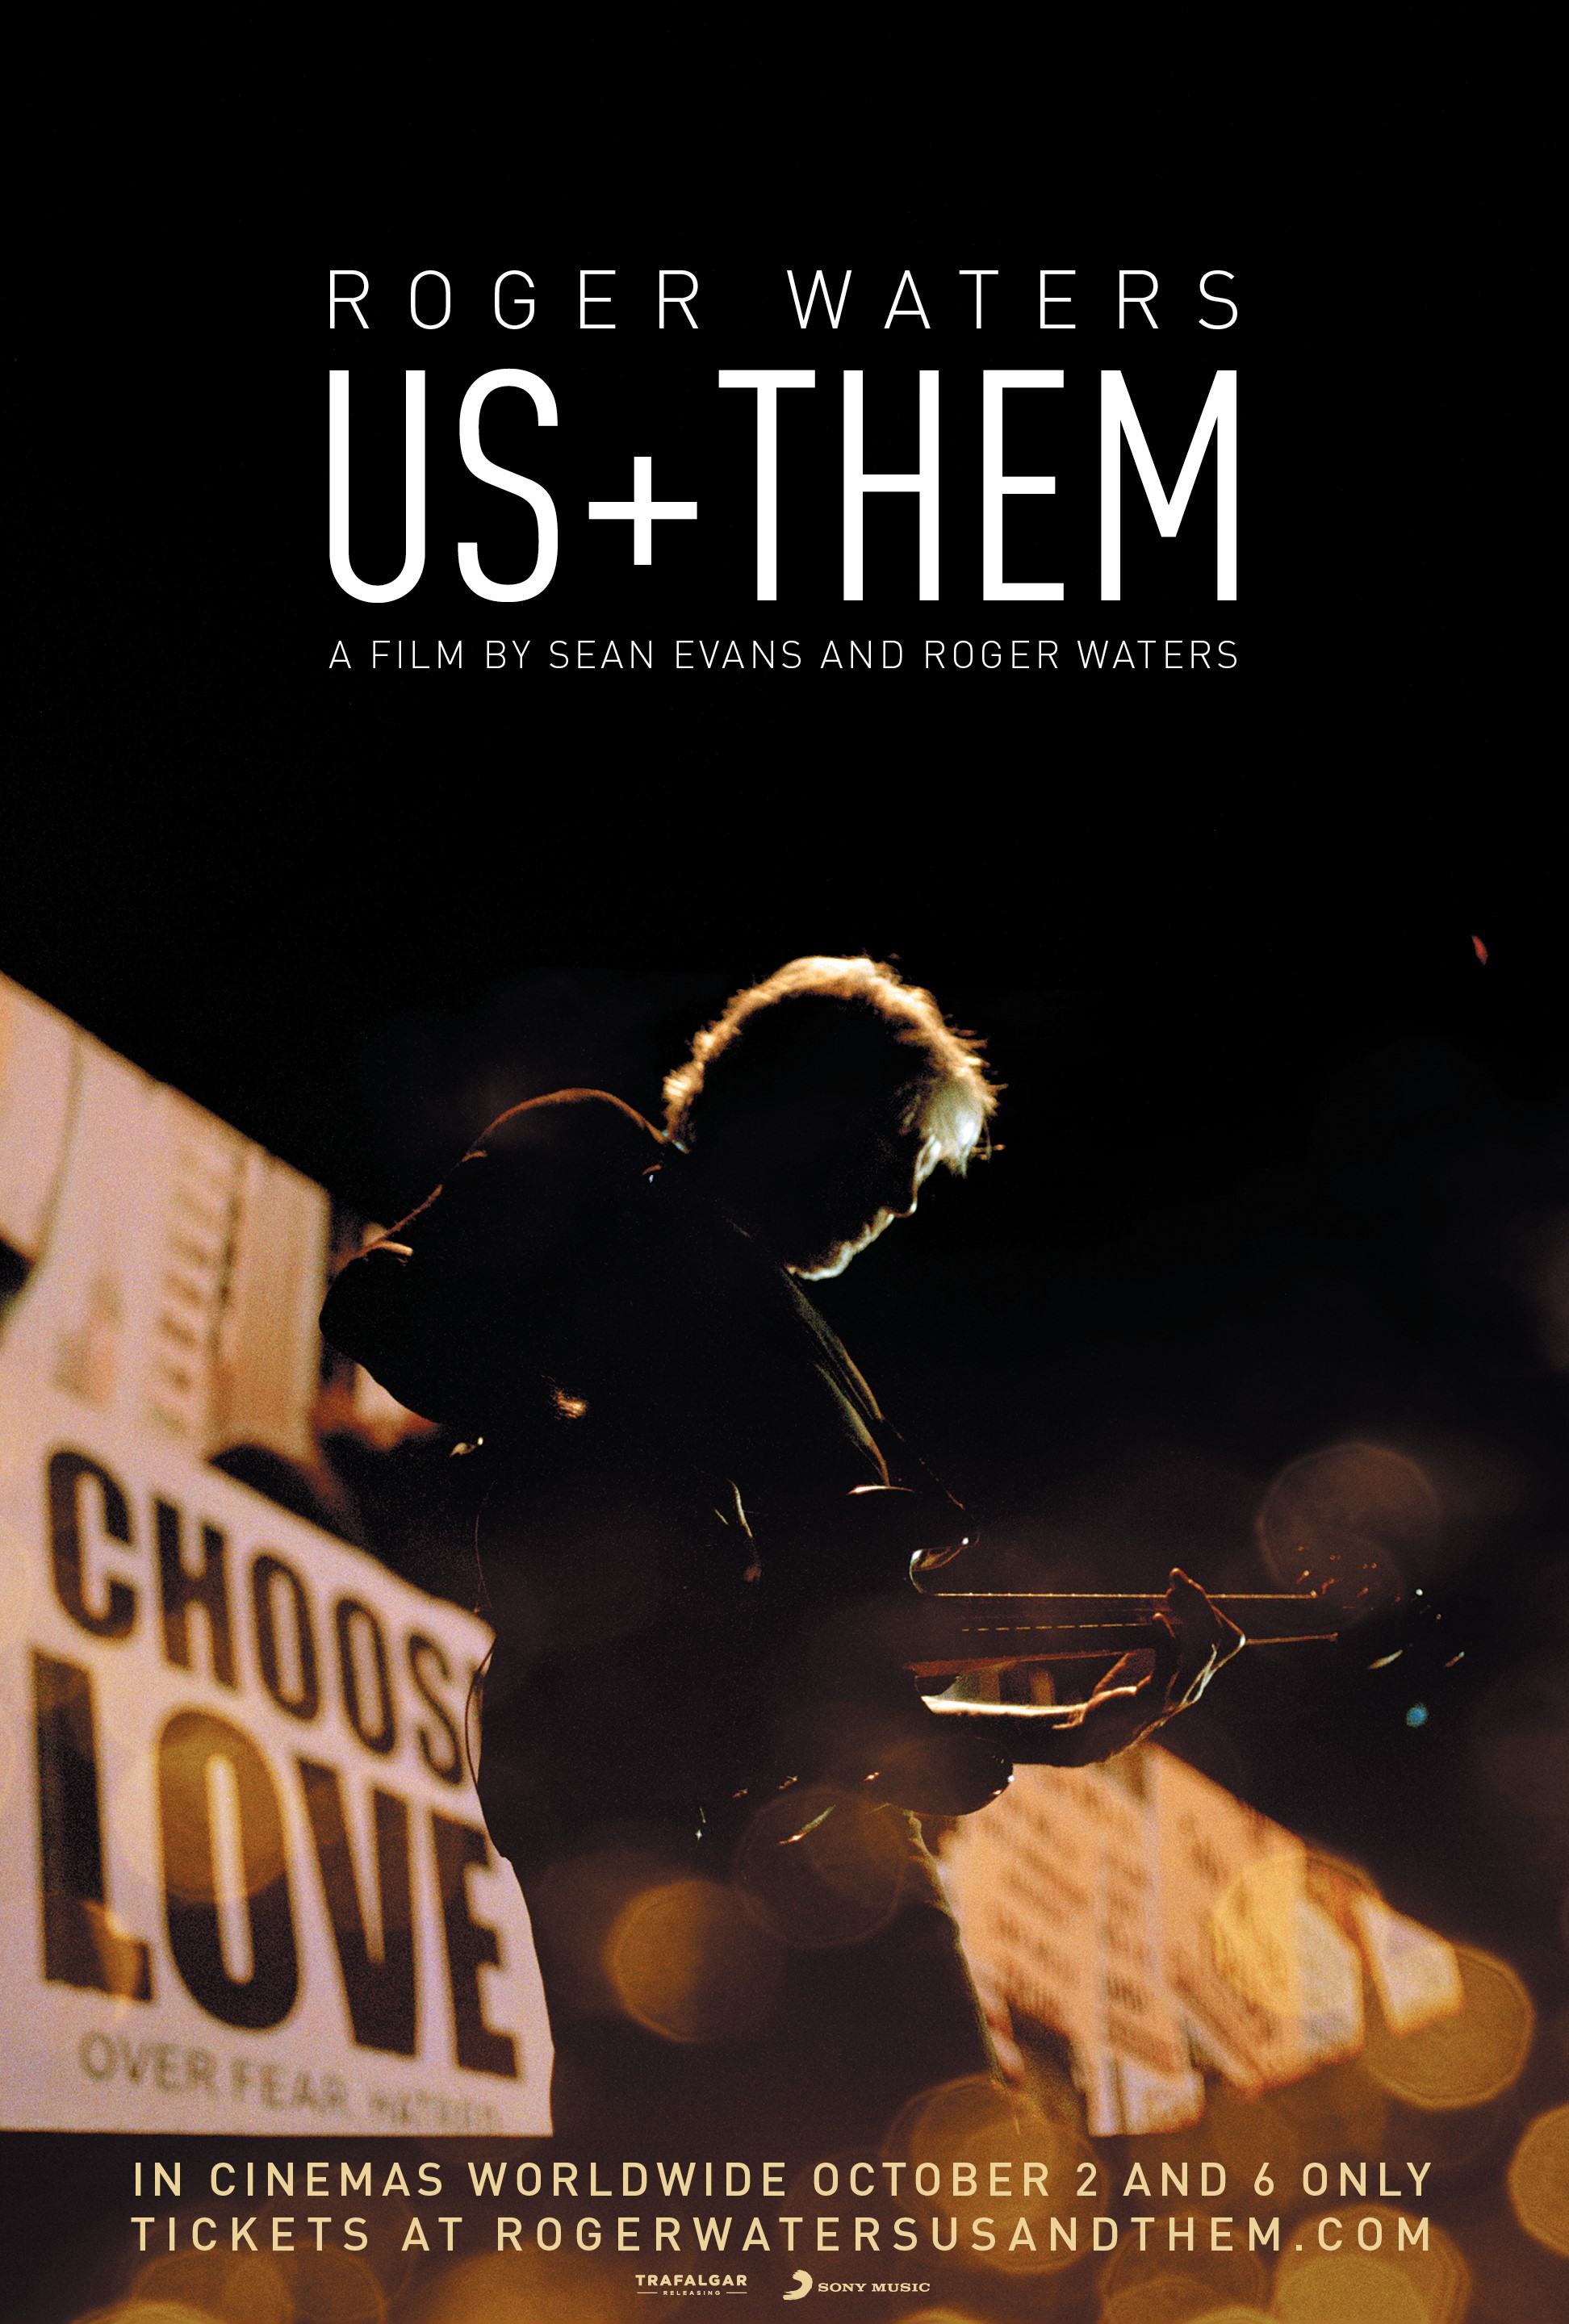 Roger Waters lanza el Tráiler de la Cinta US + THEM